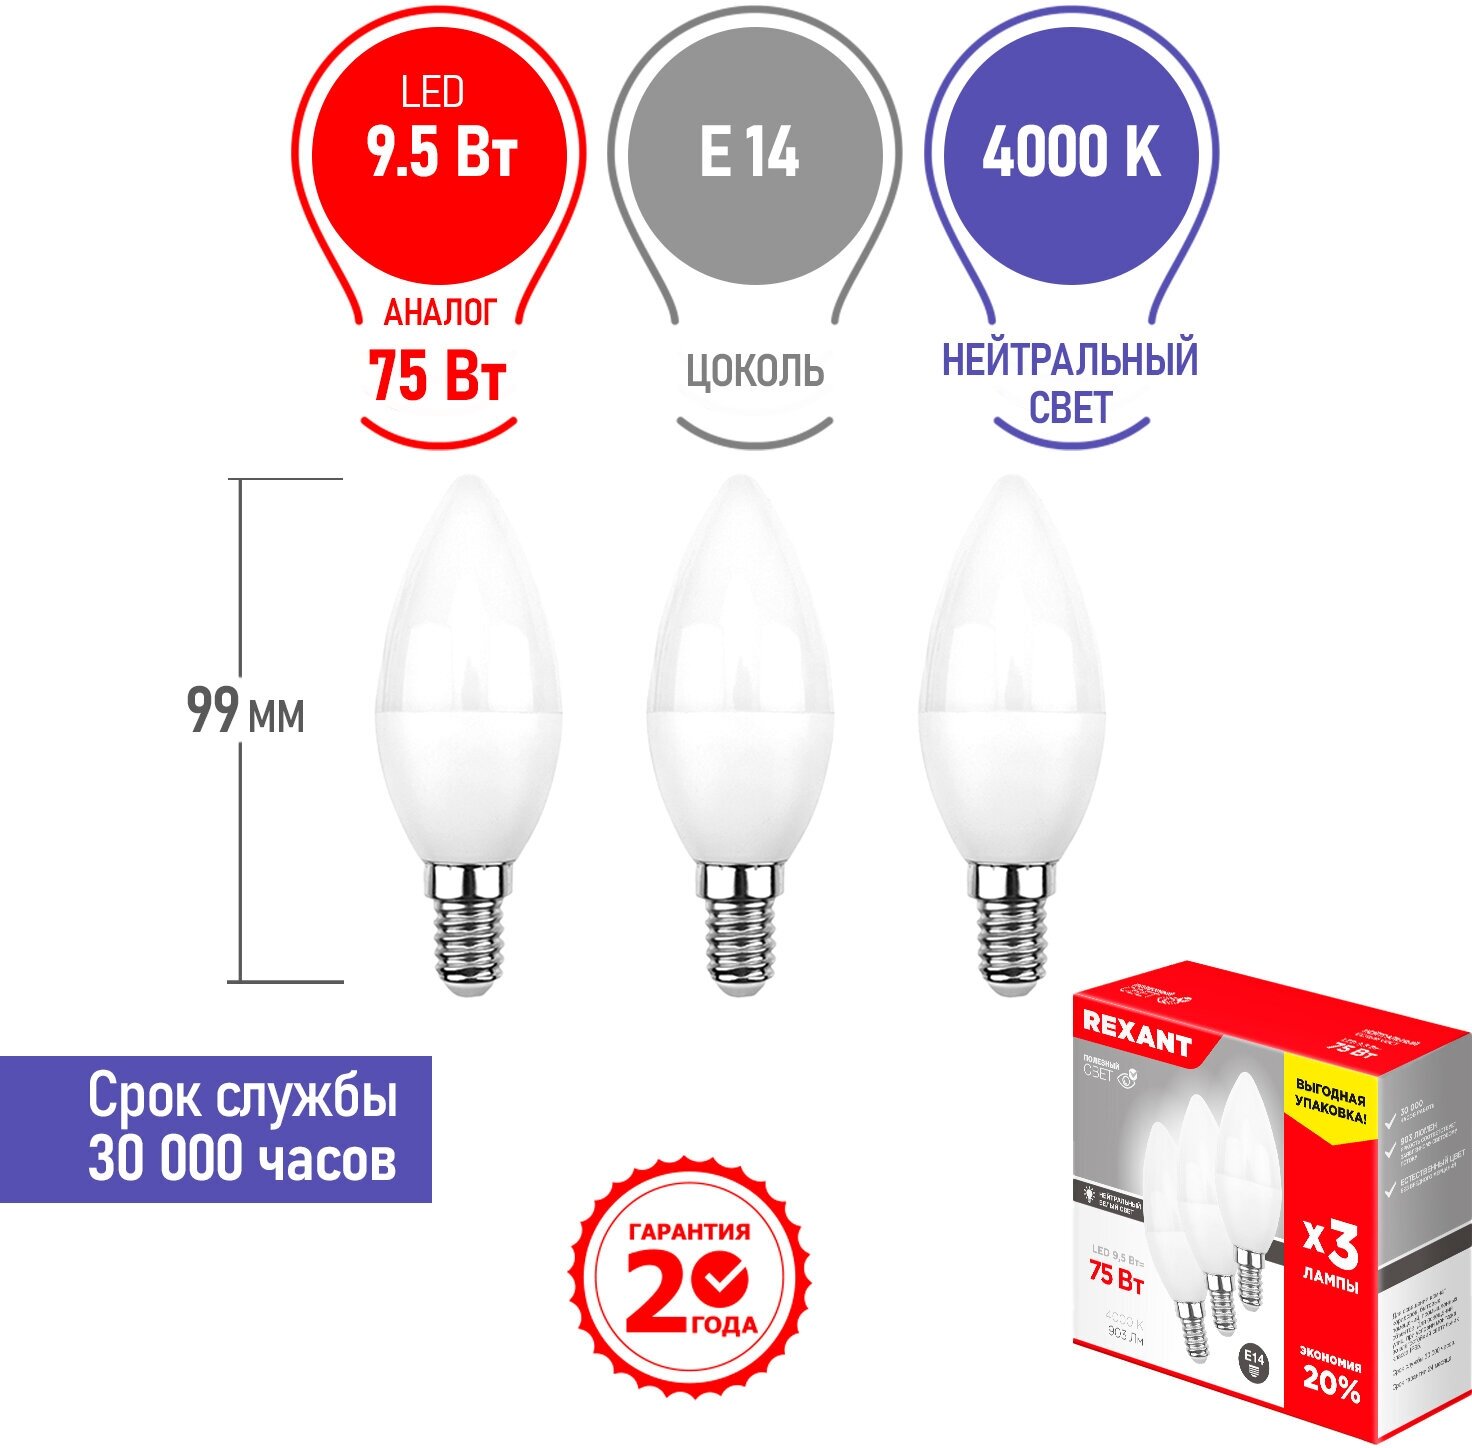 Лампа светодиодная REXANT Свеча CN 9.5 Вт E14 903 Лм 4000 K нейтральный свет (3 шт./уп.)